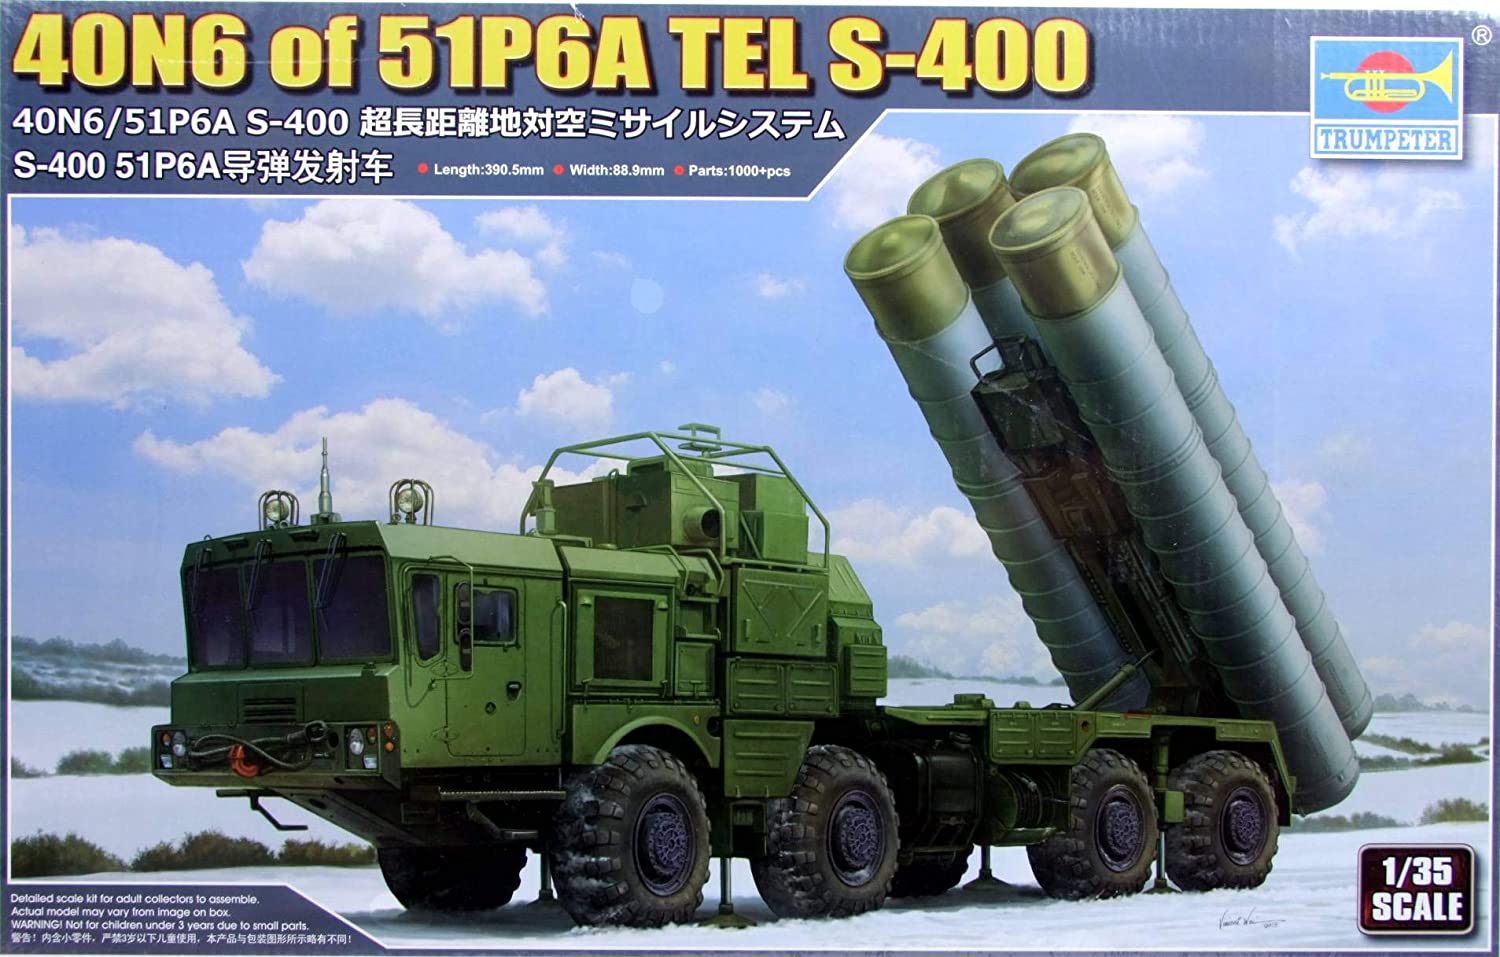 TRUMPETER（トランペッター） 1/35 ロシア連邦軍 40N6/51P6A S-400 超長距離地対空ミサイルシステム プラモデル